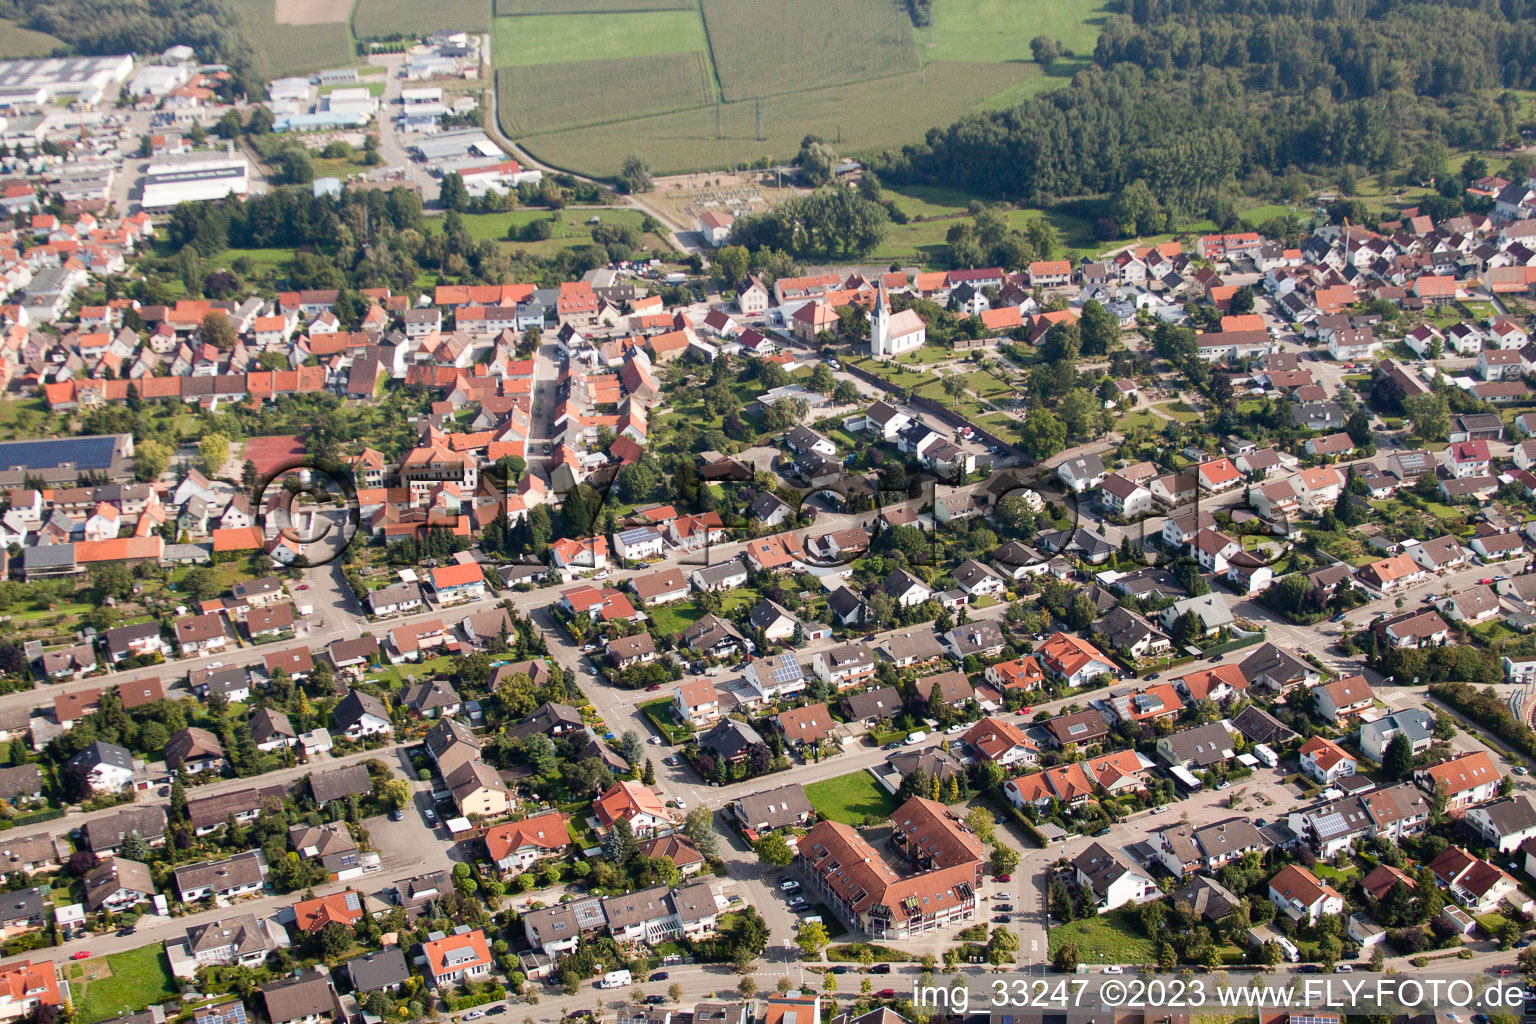 Drone recording of District Hochstetten in Linkenheim-Hochstetten in the state Baden-Wuerttemberg, Germany